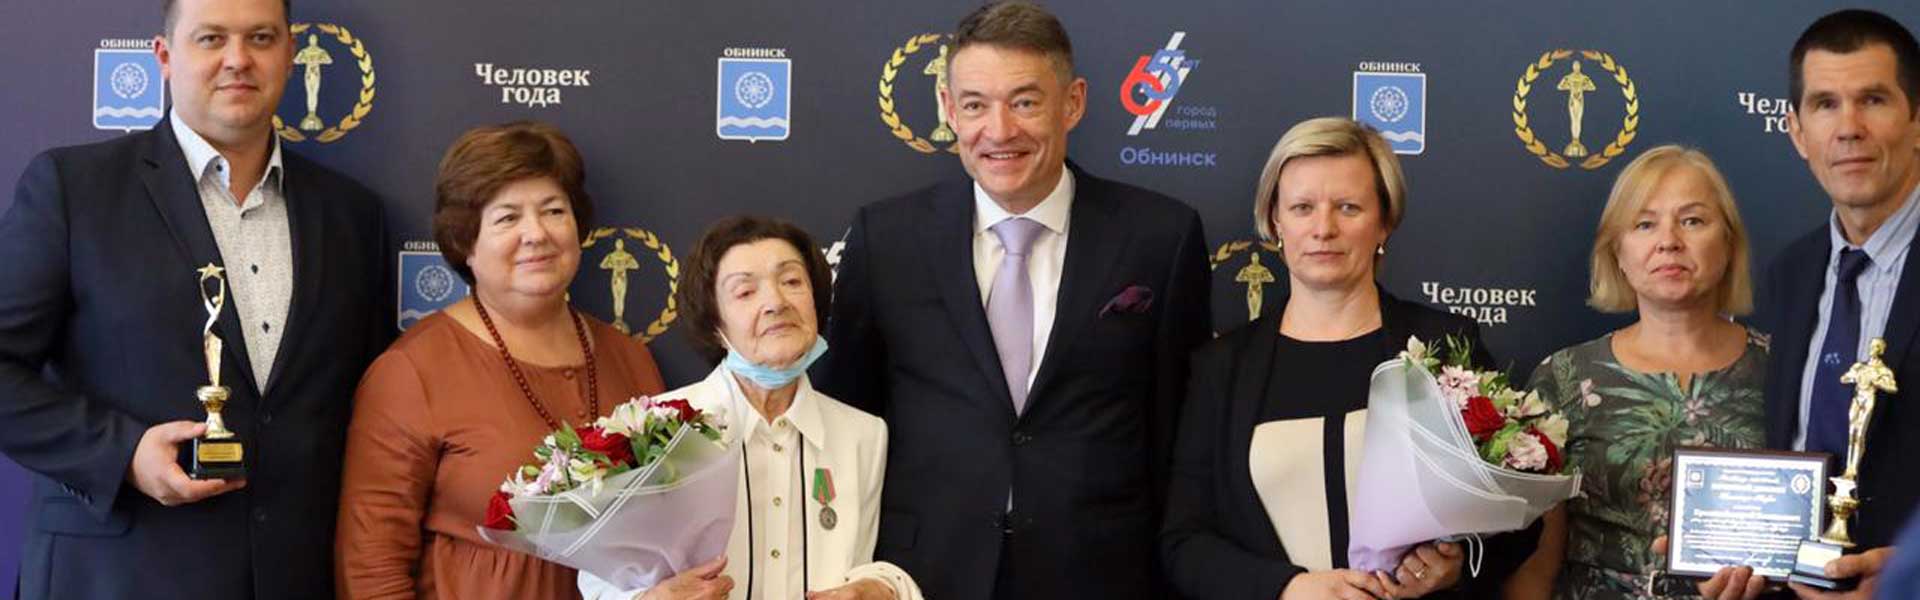 Герои года получили награды в Обнинске.